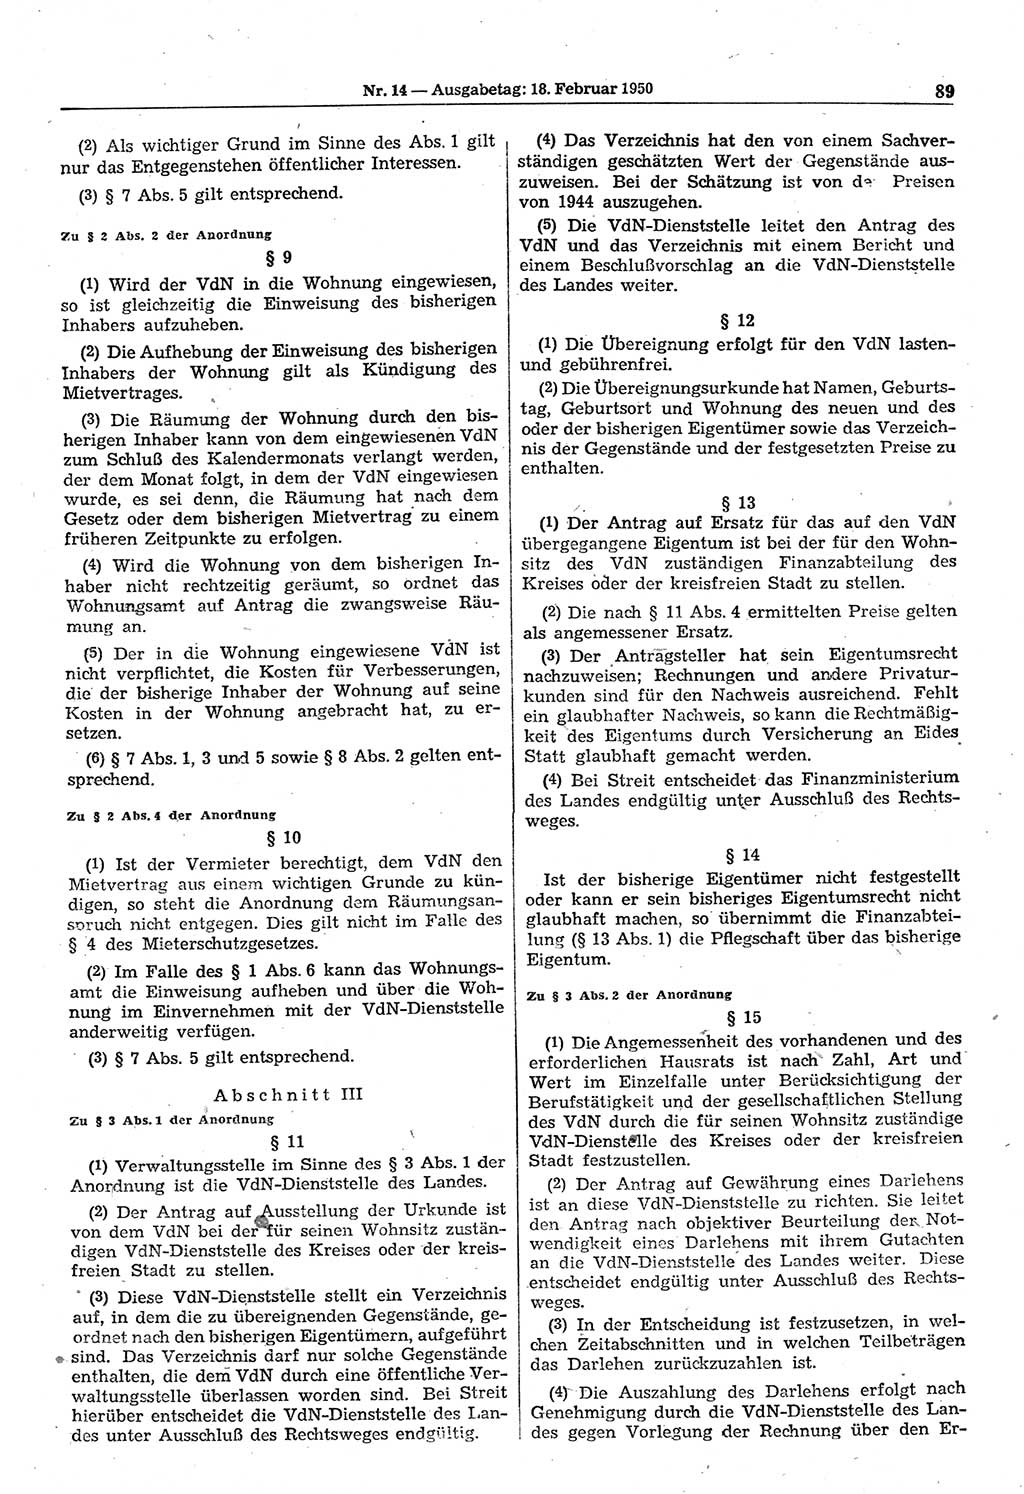 Gesetzblatt (GBl.) der Deutschen Demokratischen Republik (DDR) 1950, Seite 89 (GBl. DDR 1950, S. 89)